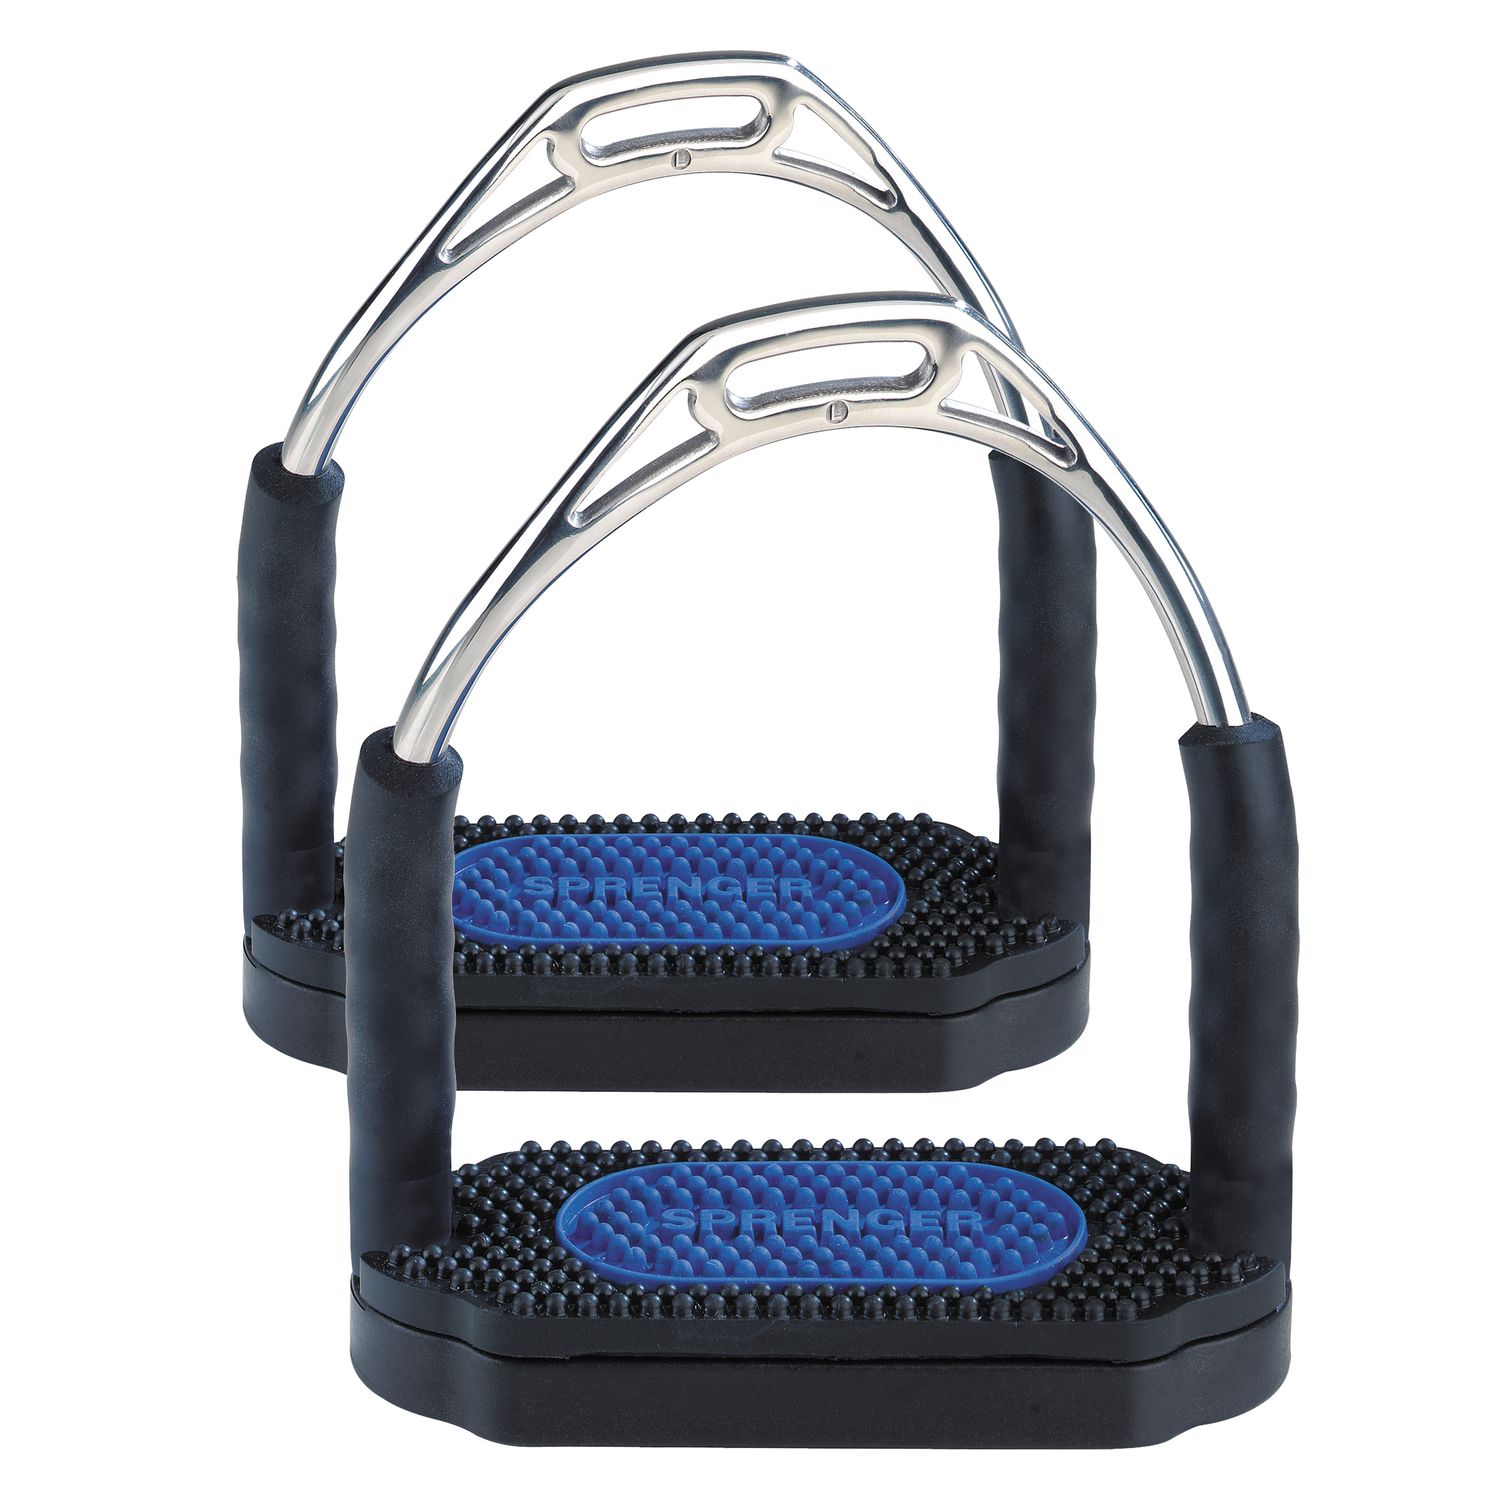 SPRENGER Gelenksteigbügel Bow Balance schwarz/blau | 12 cm